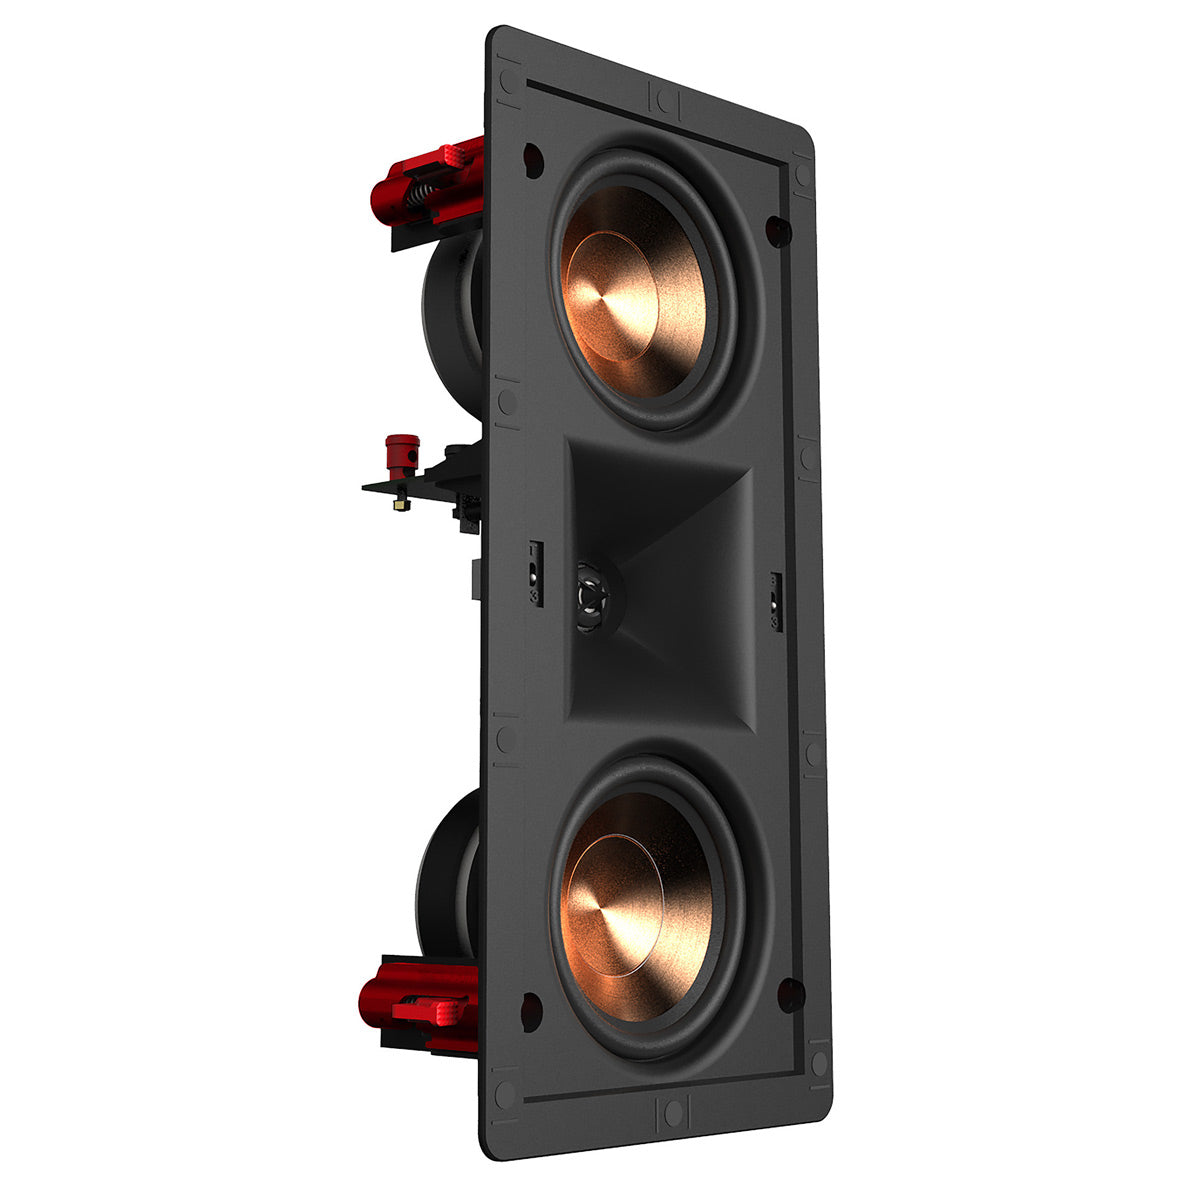 Klipsch PRO-25-RW-LCR In-Wall Speaker